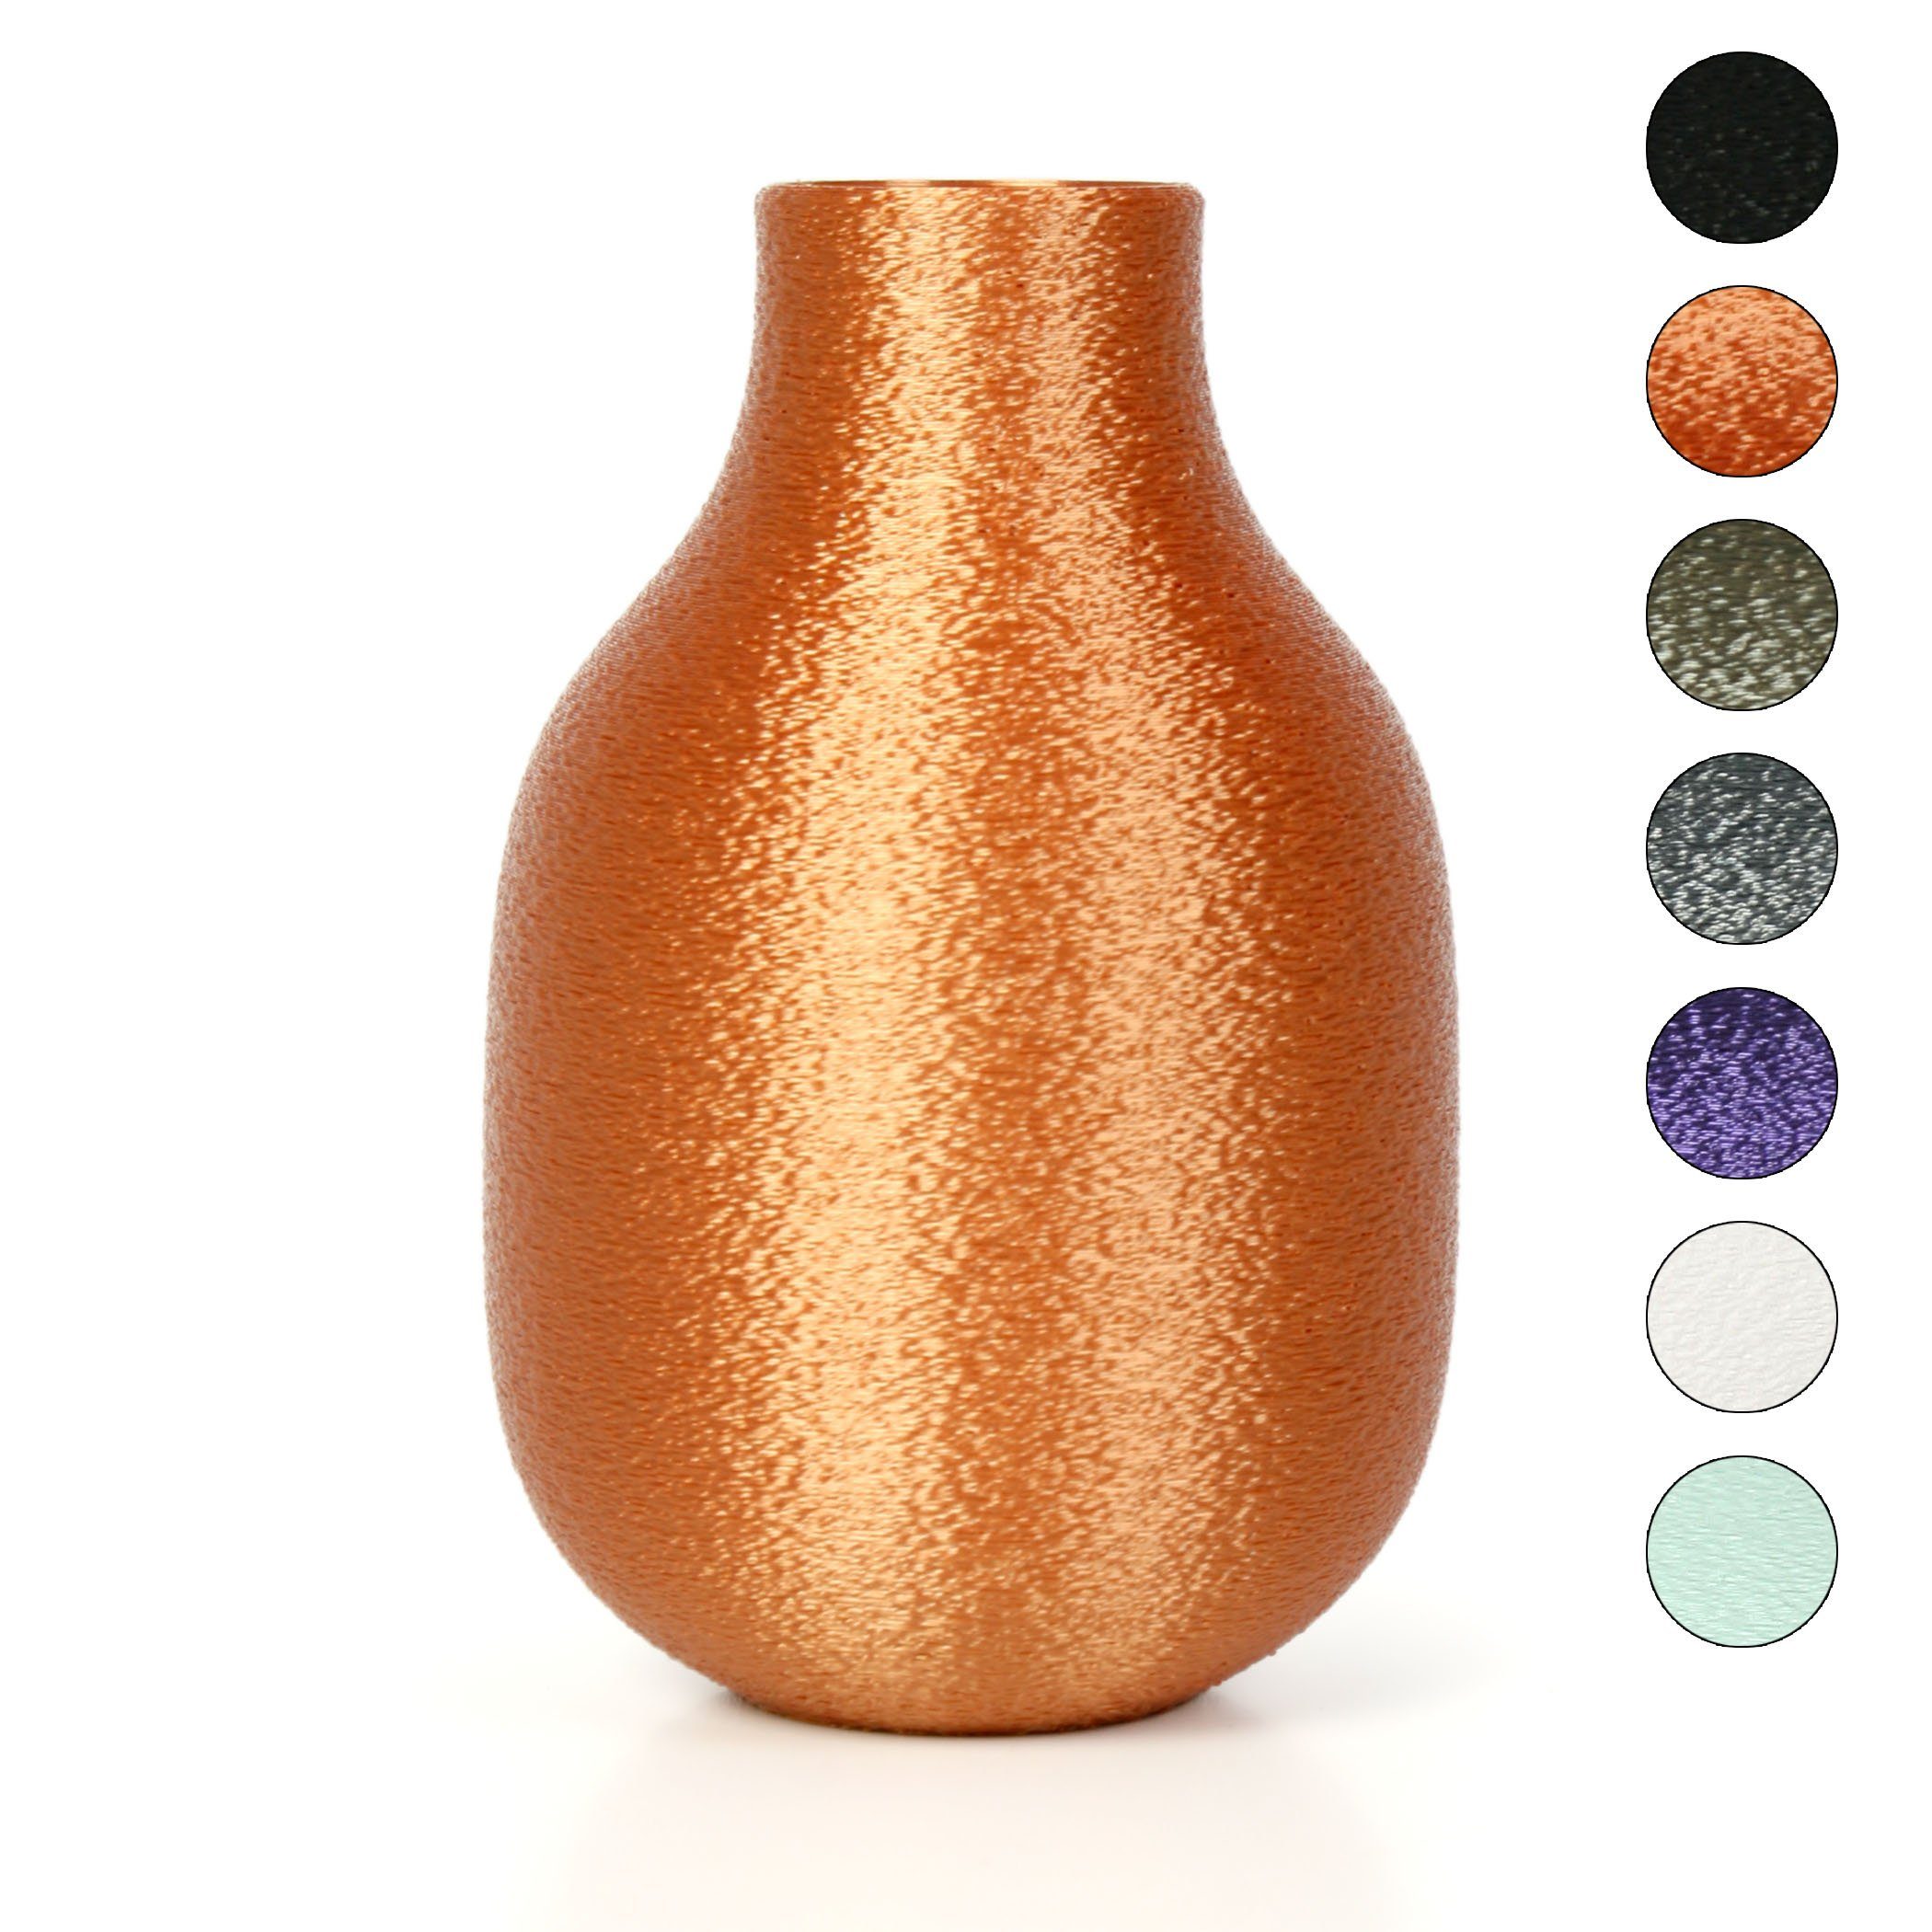 Kreative Feder Dekovase Designer Vase – Dekorative Blumenvase aus Bio-Kunststoff, aus nachwachsenden Rohstoffen; wasserdicht & bruchsicher Bronze